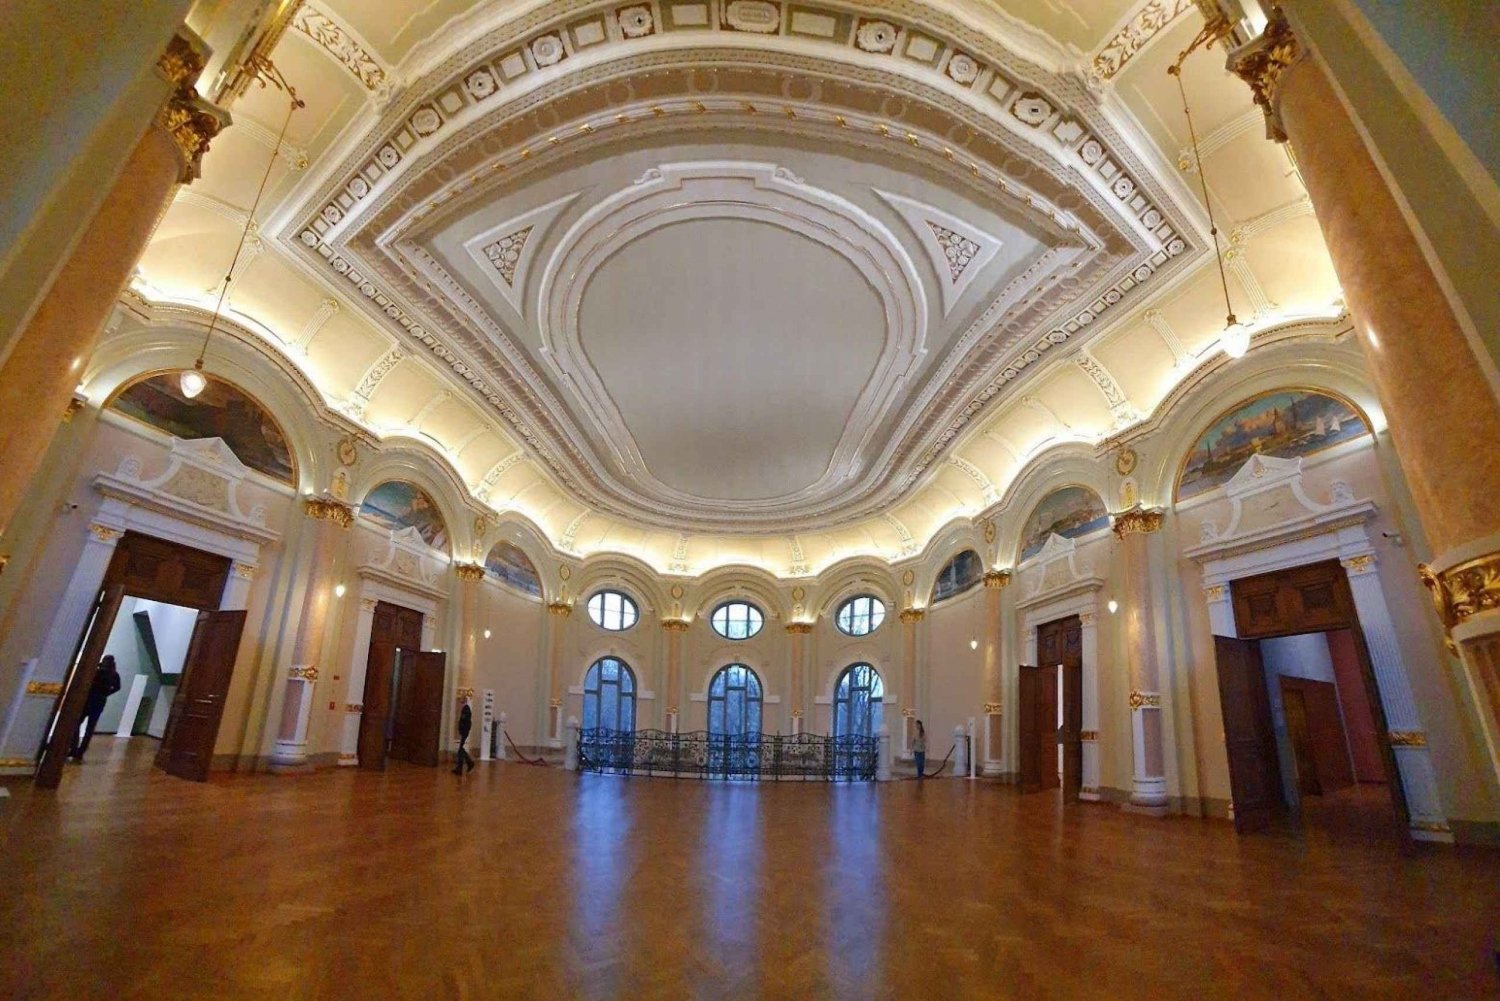 Découvrez l'Art nouveau de Riga grâce à une visite guidée audioguide